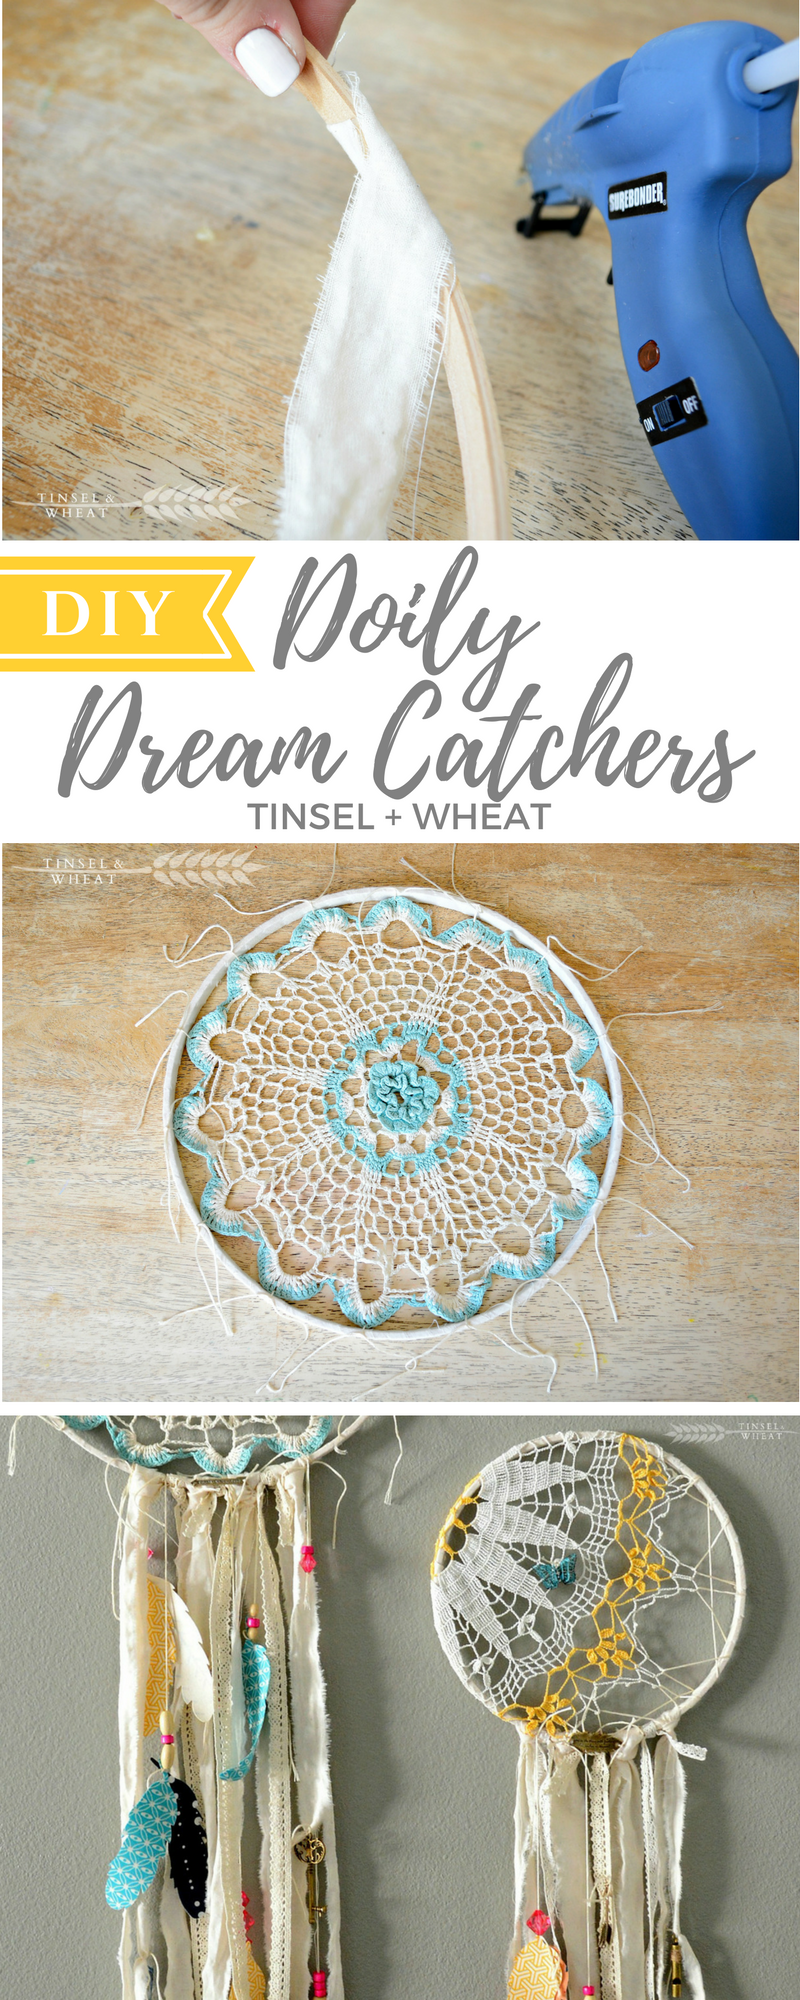 19 diy Dream Catcher doily ideas